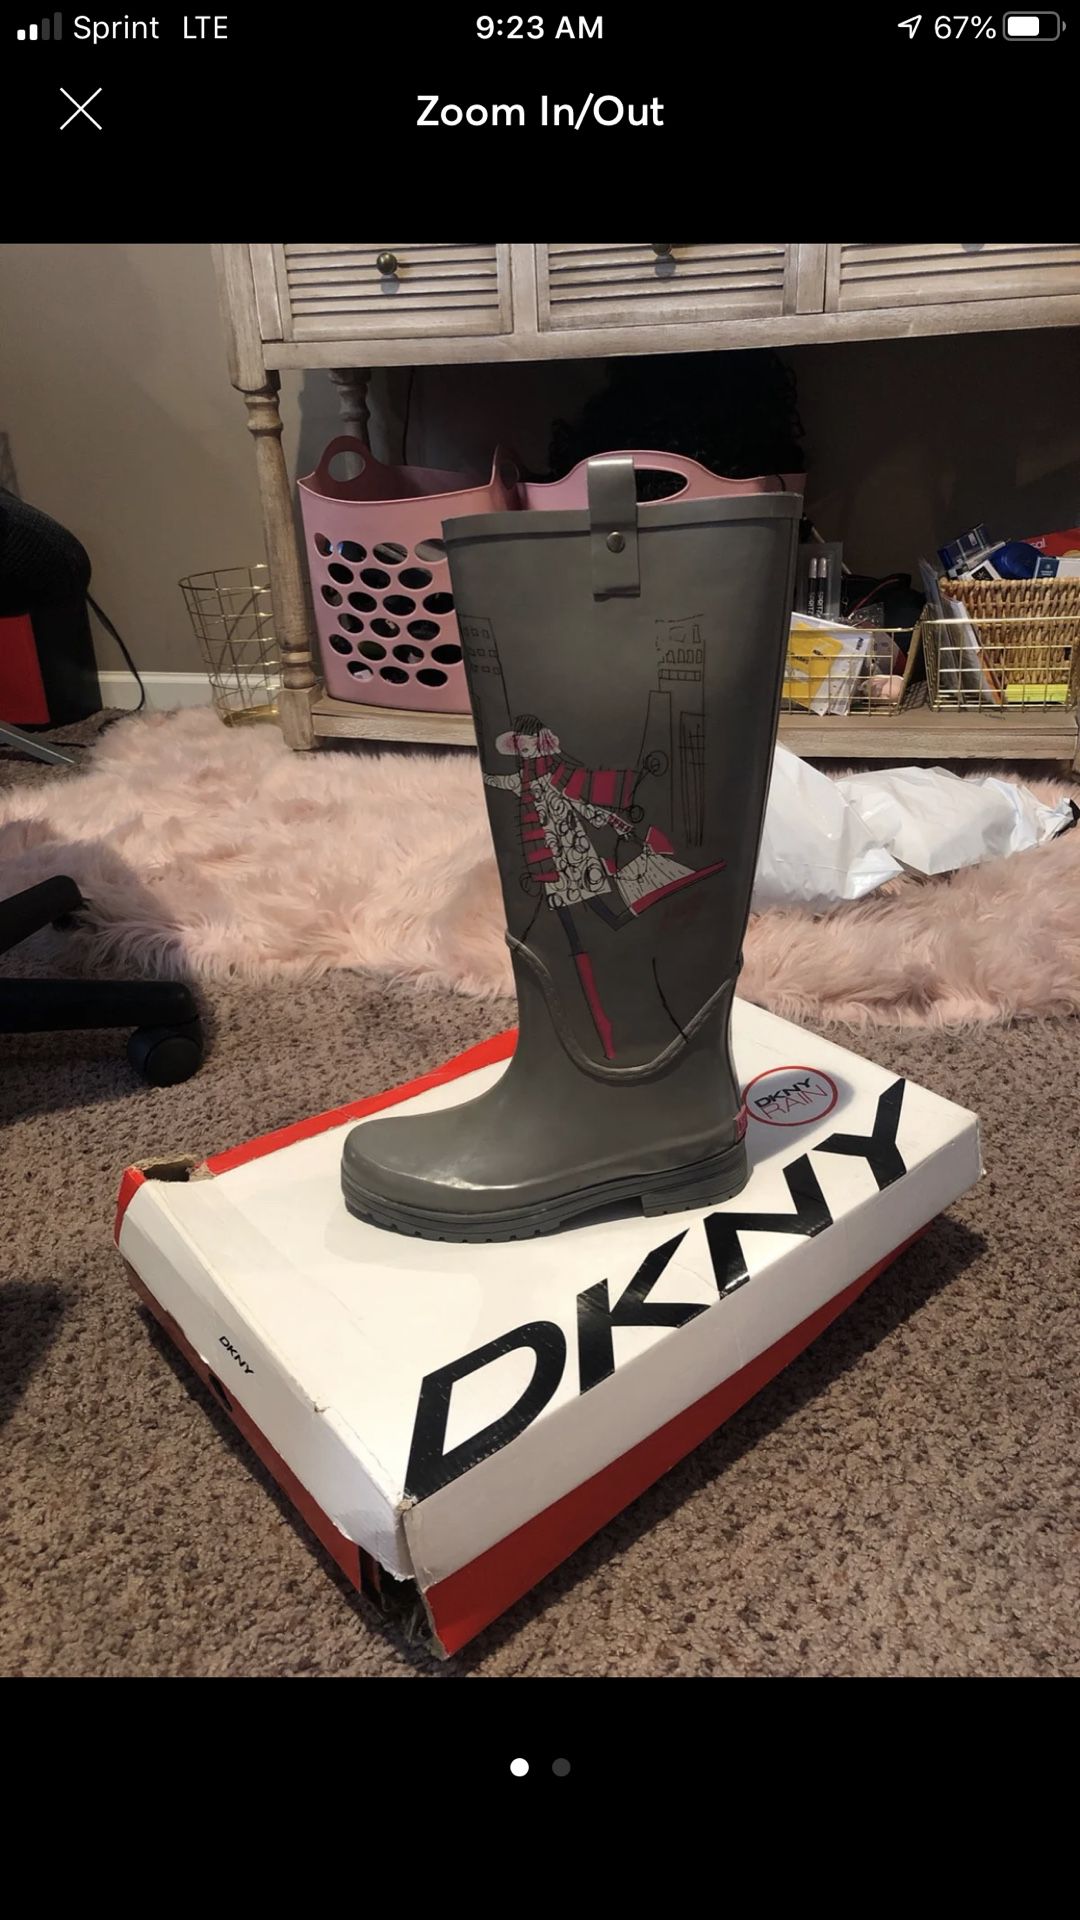 Dkny Rain boots